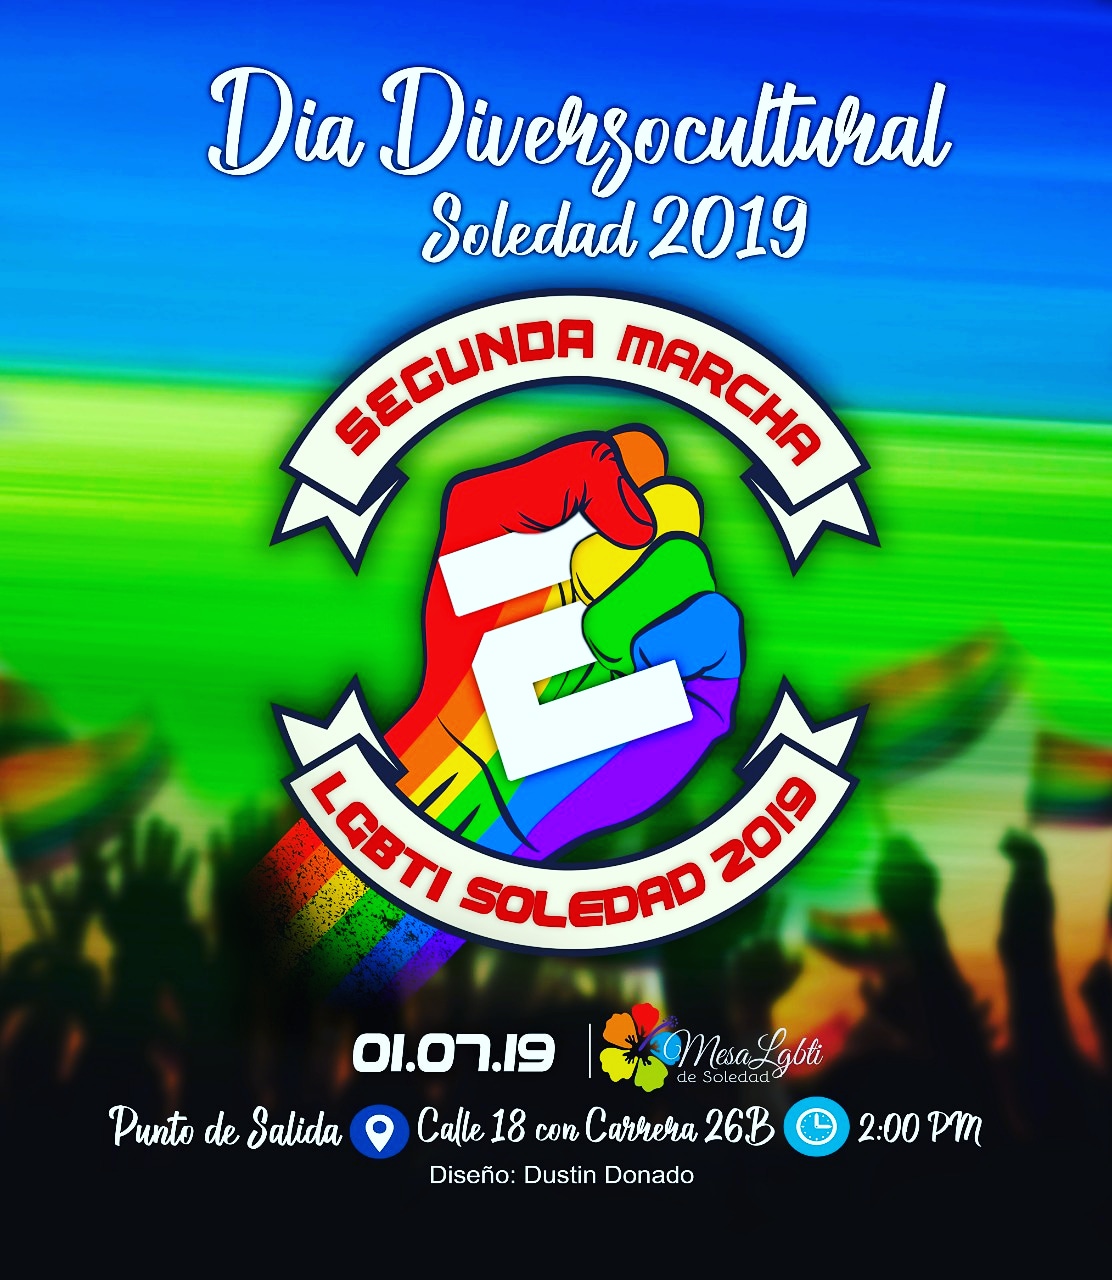  2 Marcha LGBTI De Soledad - Soledad 2019 [SOLEDAD] 